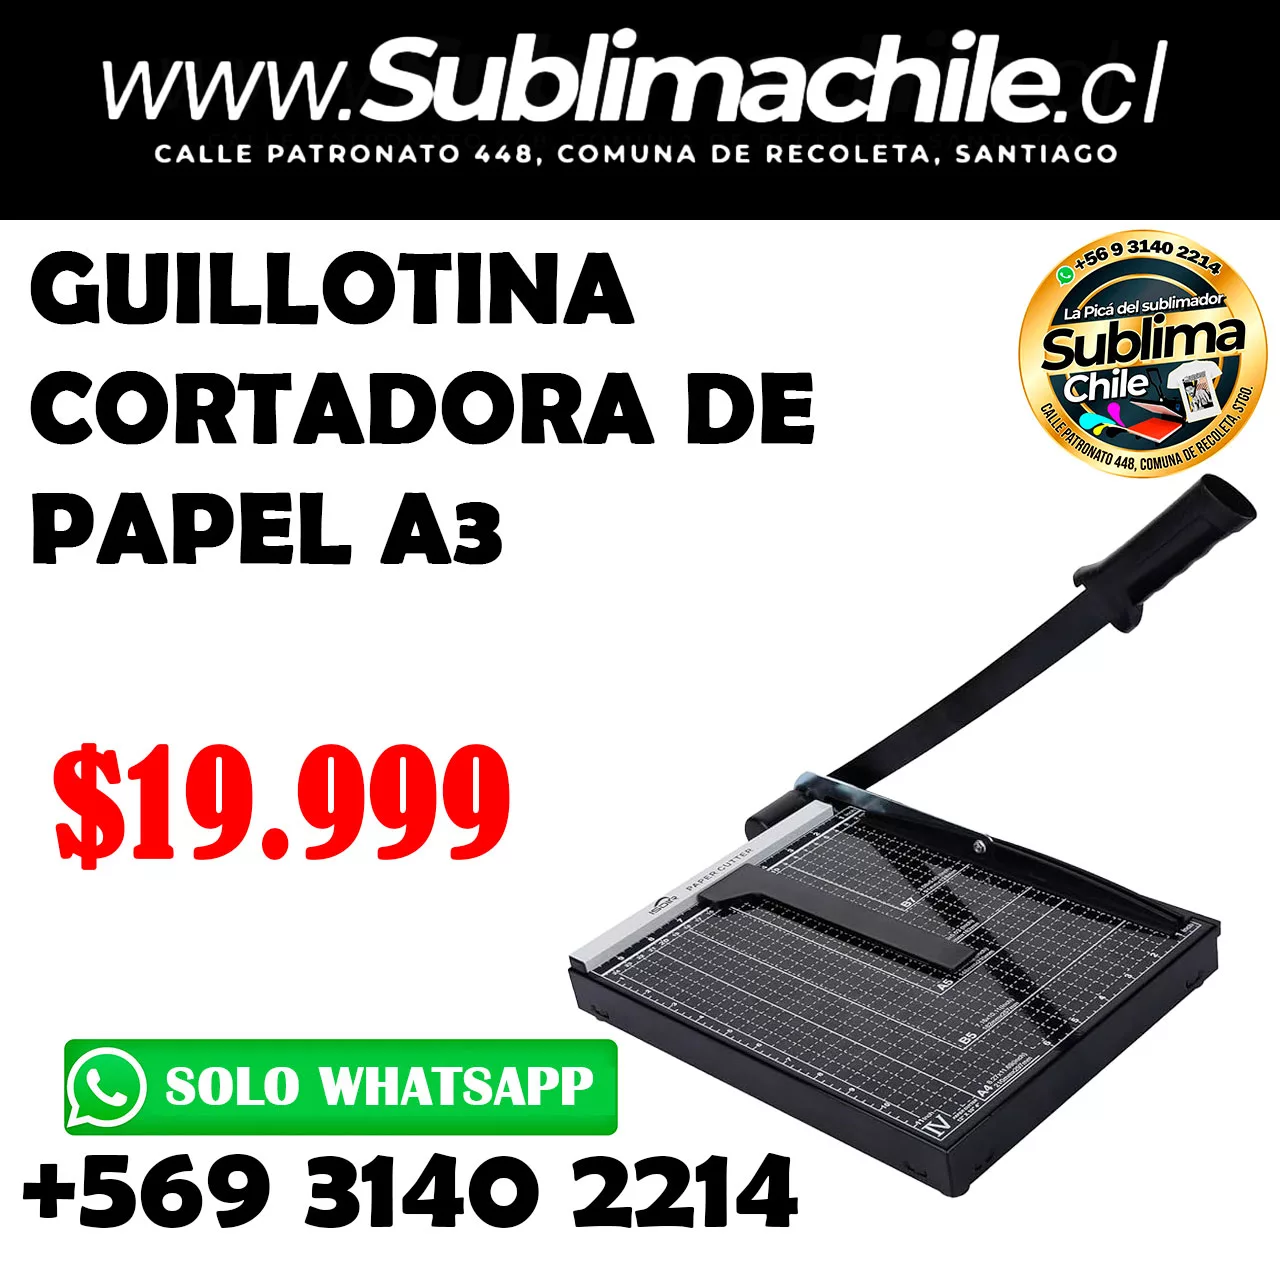 Guillotina cortadora de papel A3 - Sublimachile - Santiago Chile